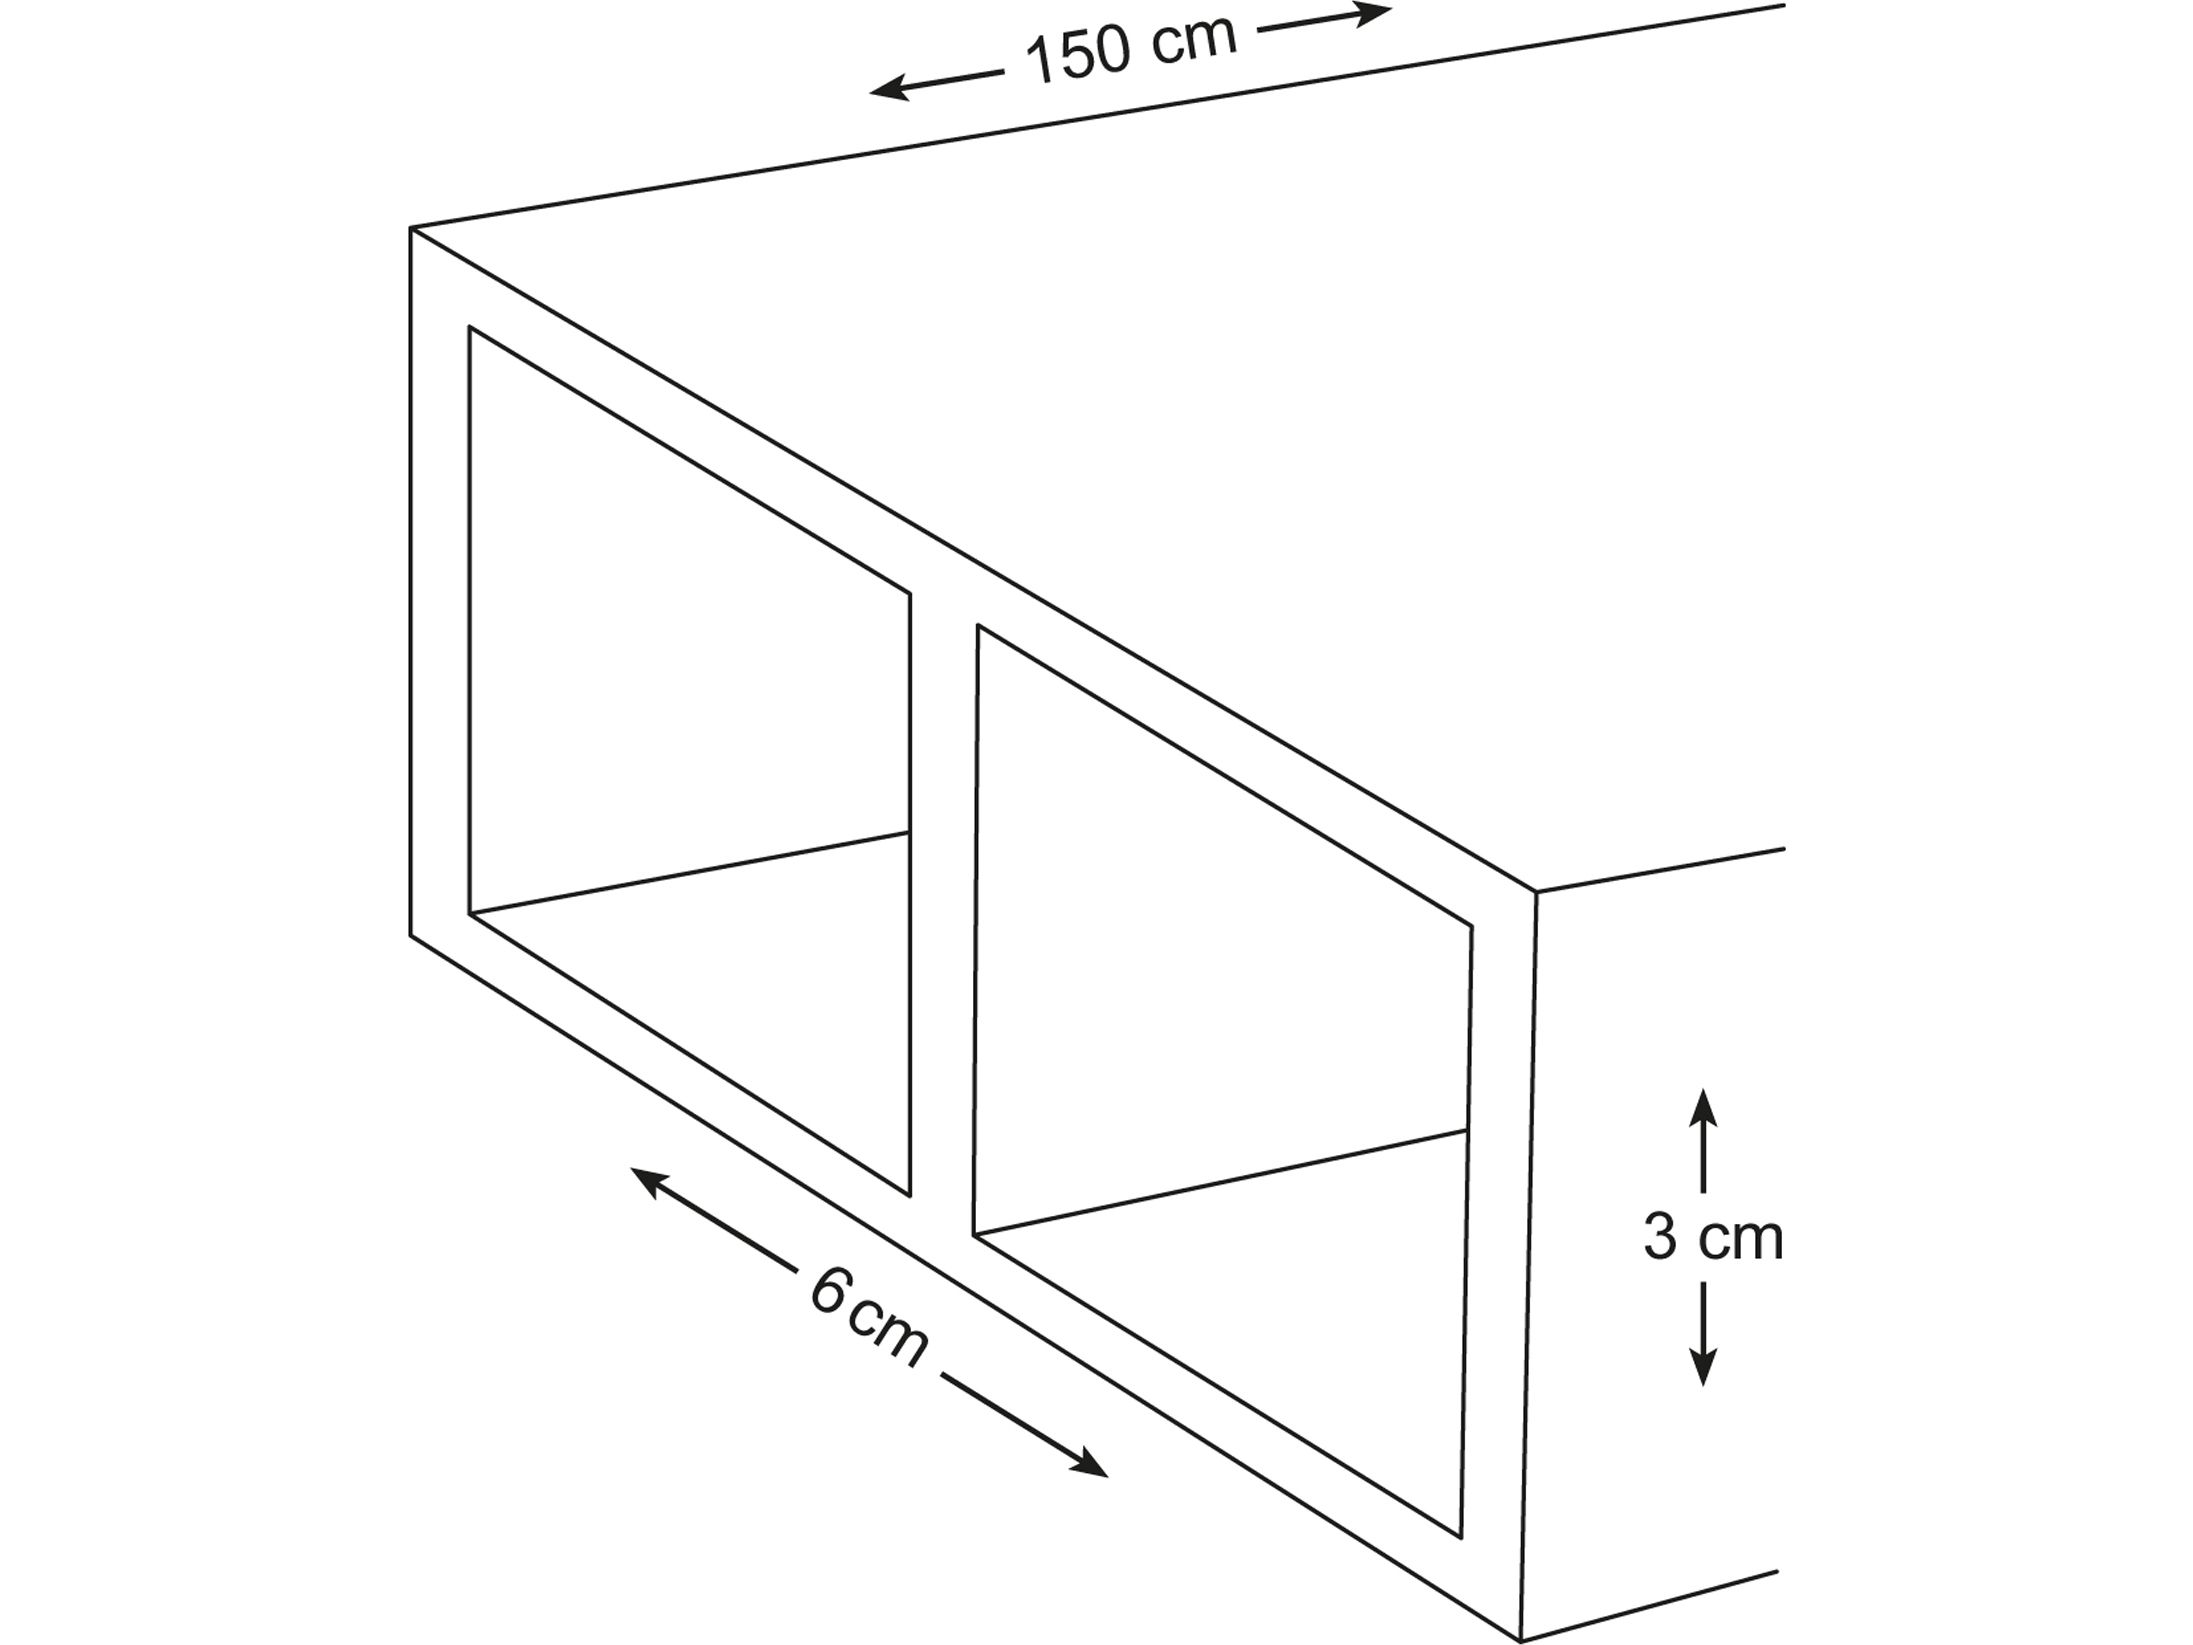 toolland-alu-profil-3-x-6-cm-150-cm